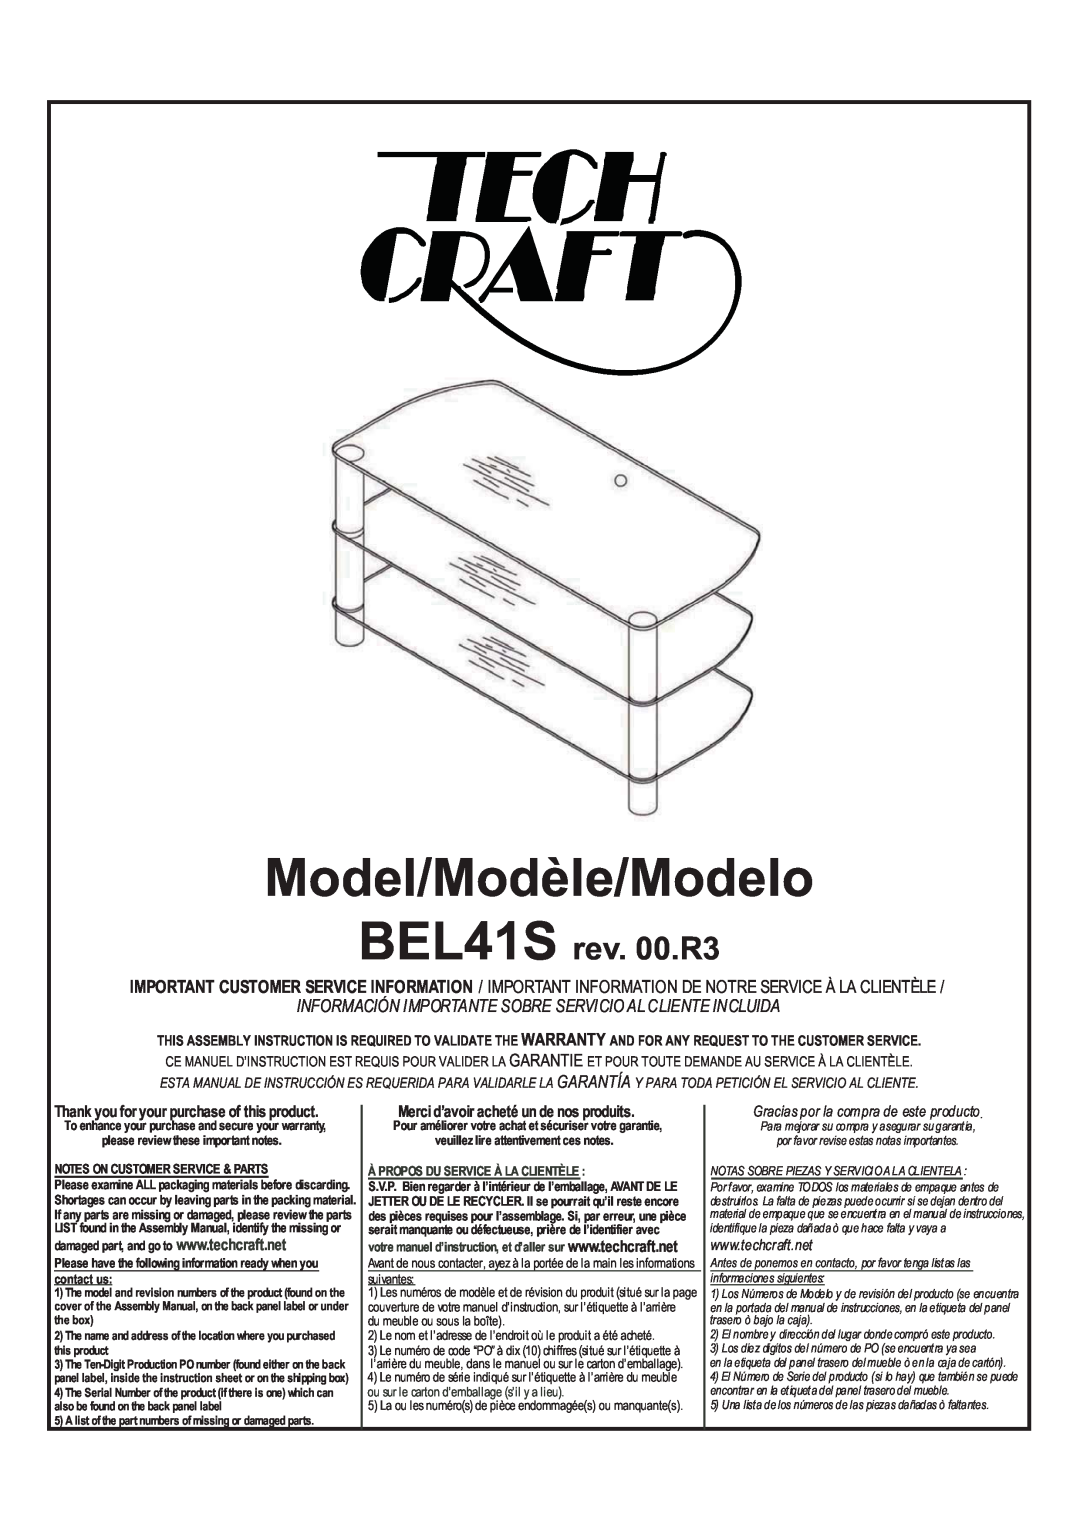 Tech Craft warranty Model/Modèle/Modelo, BEL41S rev. 00.R3, Información Importante Sobre Servicio Al Cliente Incluida 